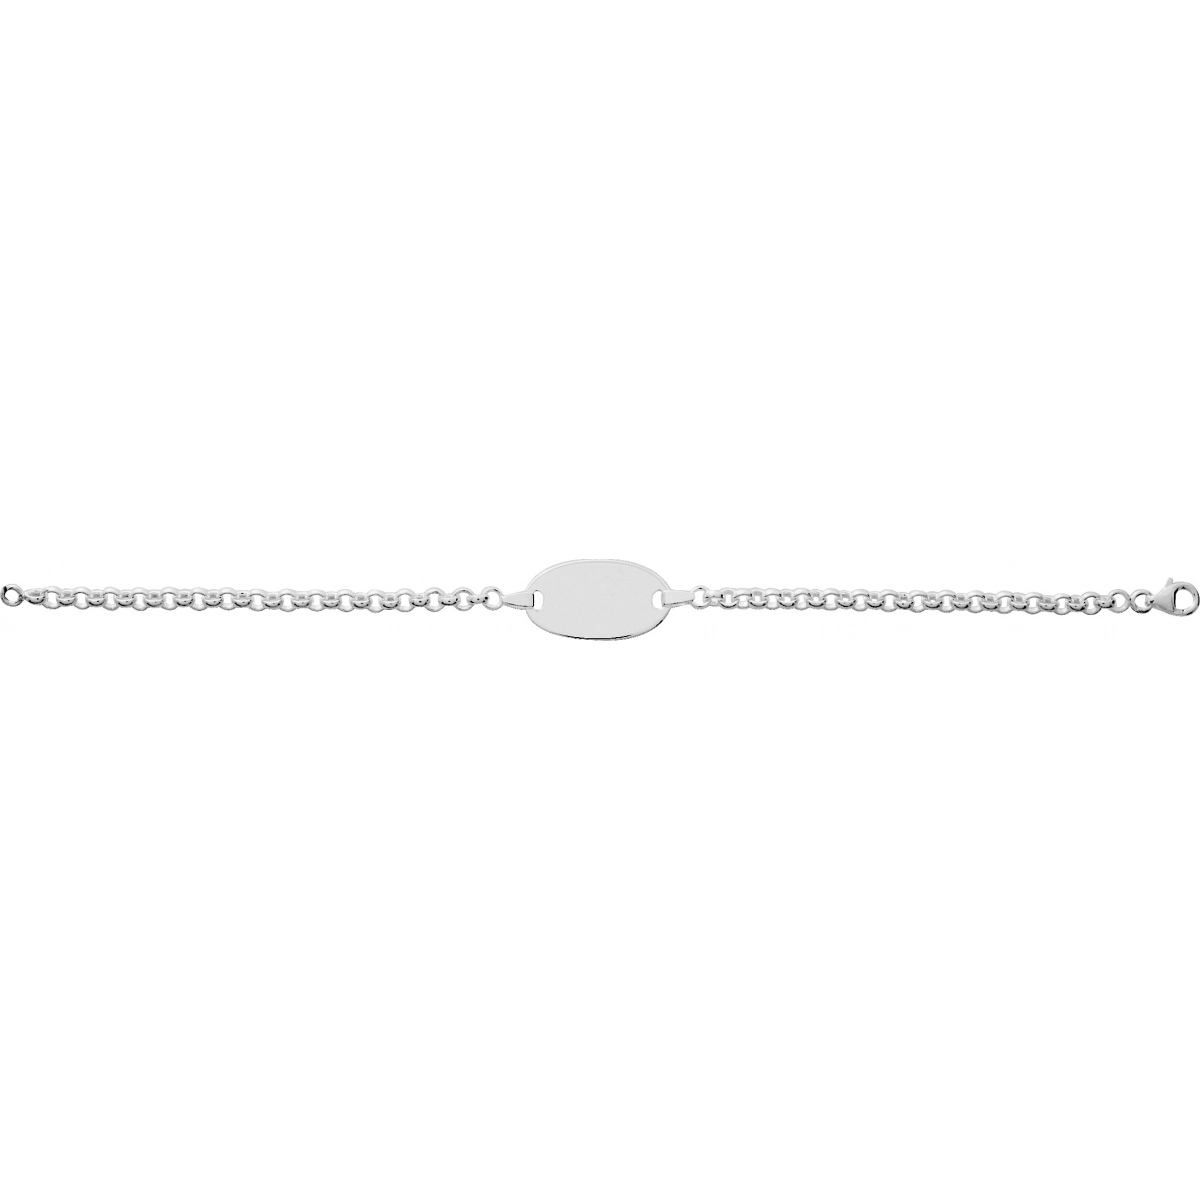 ID bracelet rh925 Silver - Size: 18  Lua Blanca  304109.00.18